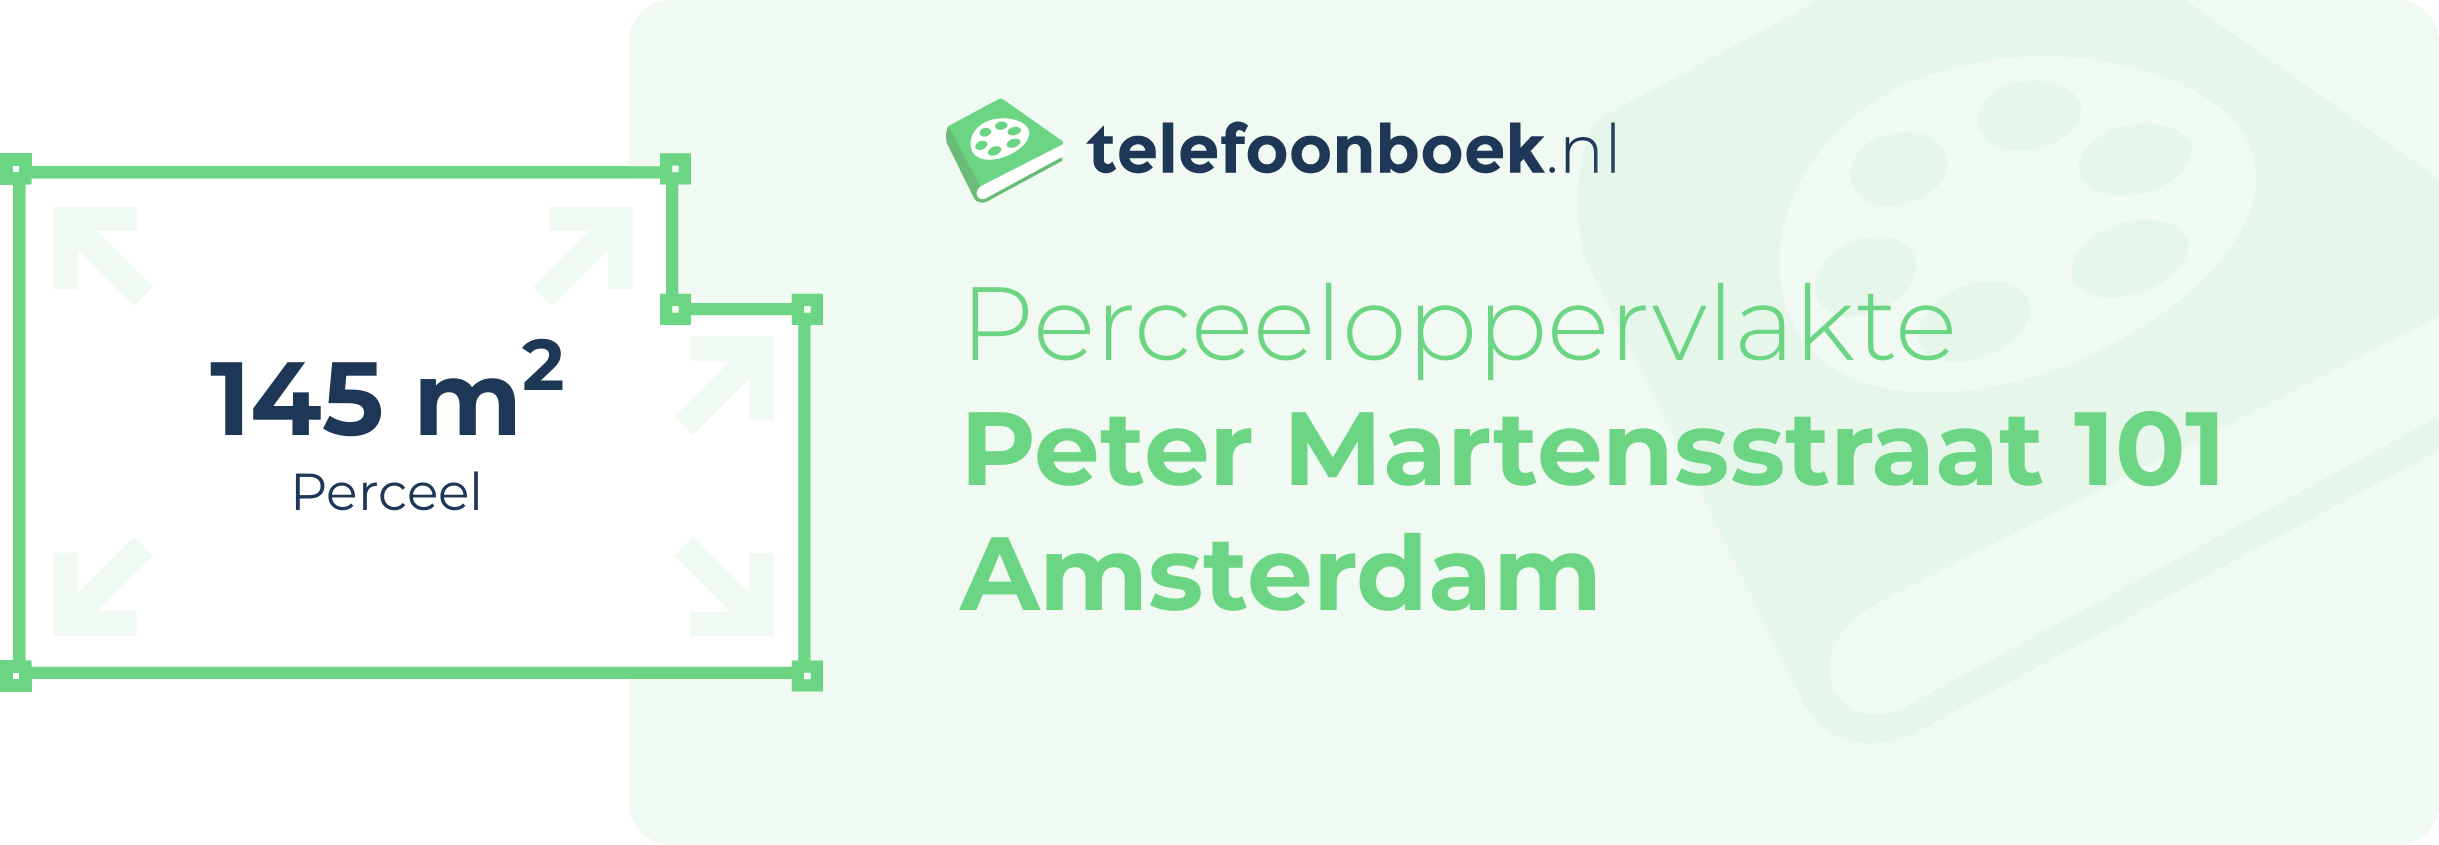 Perceeloppervlakte Peter Martensstraat 101 Amsterdam